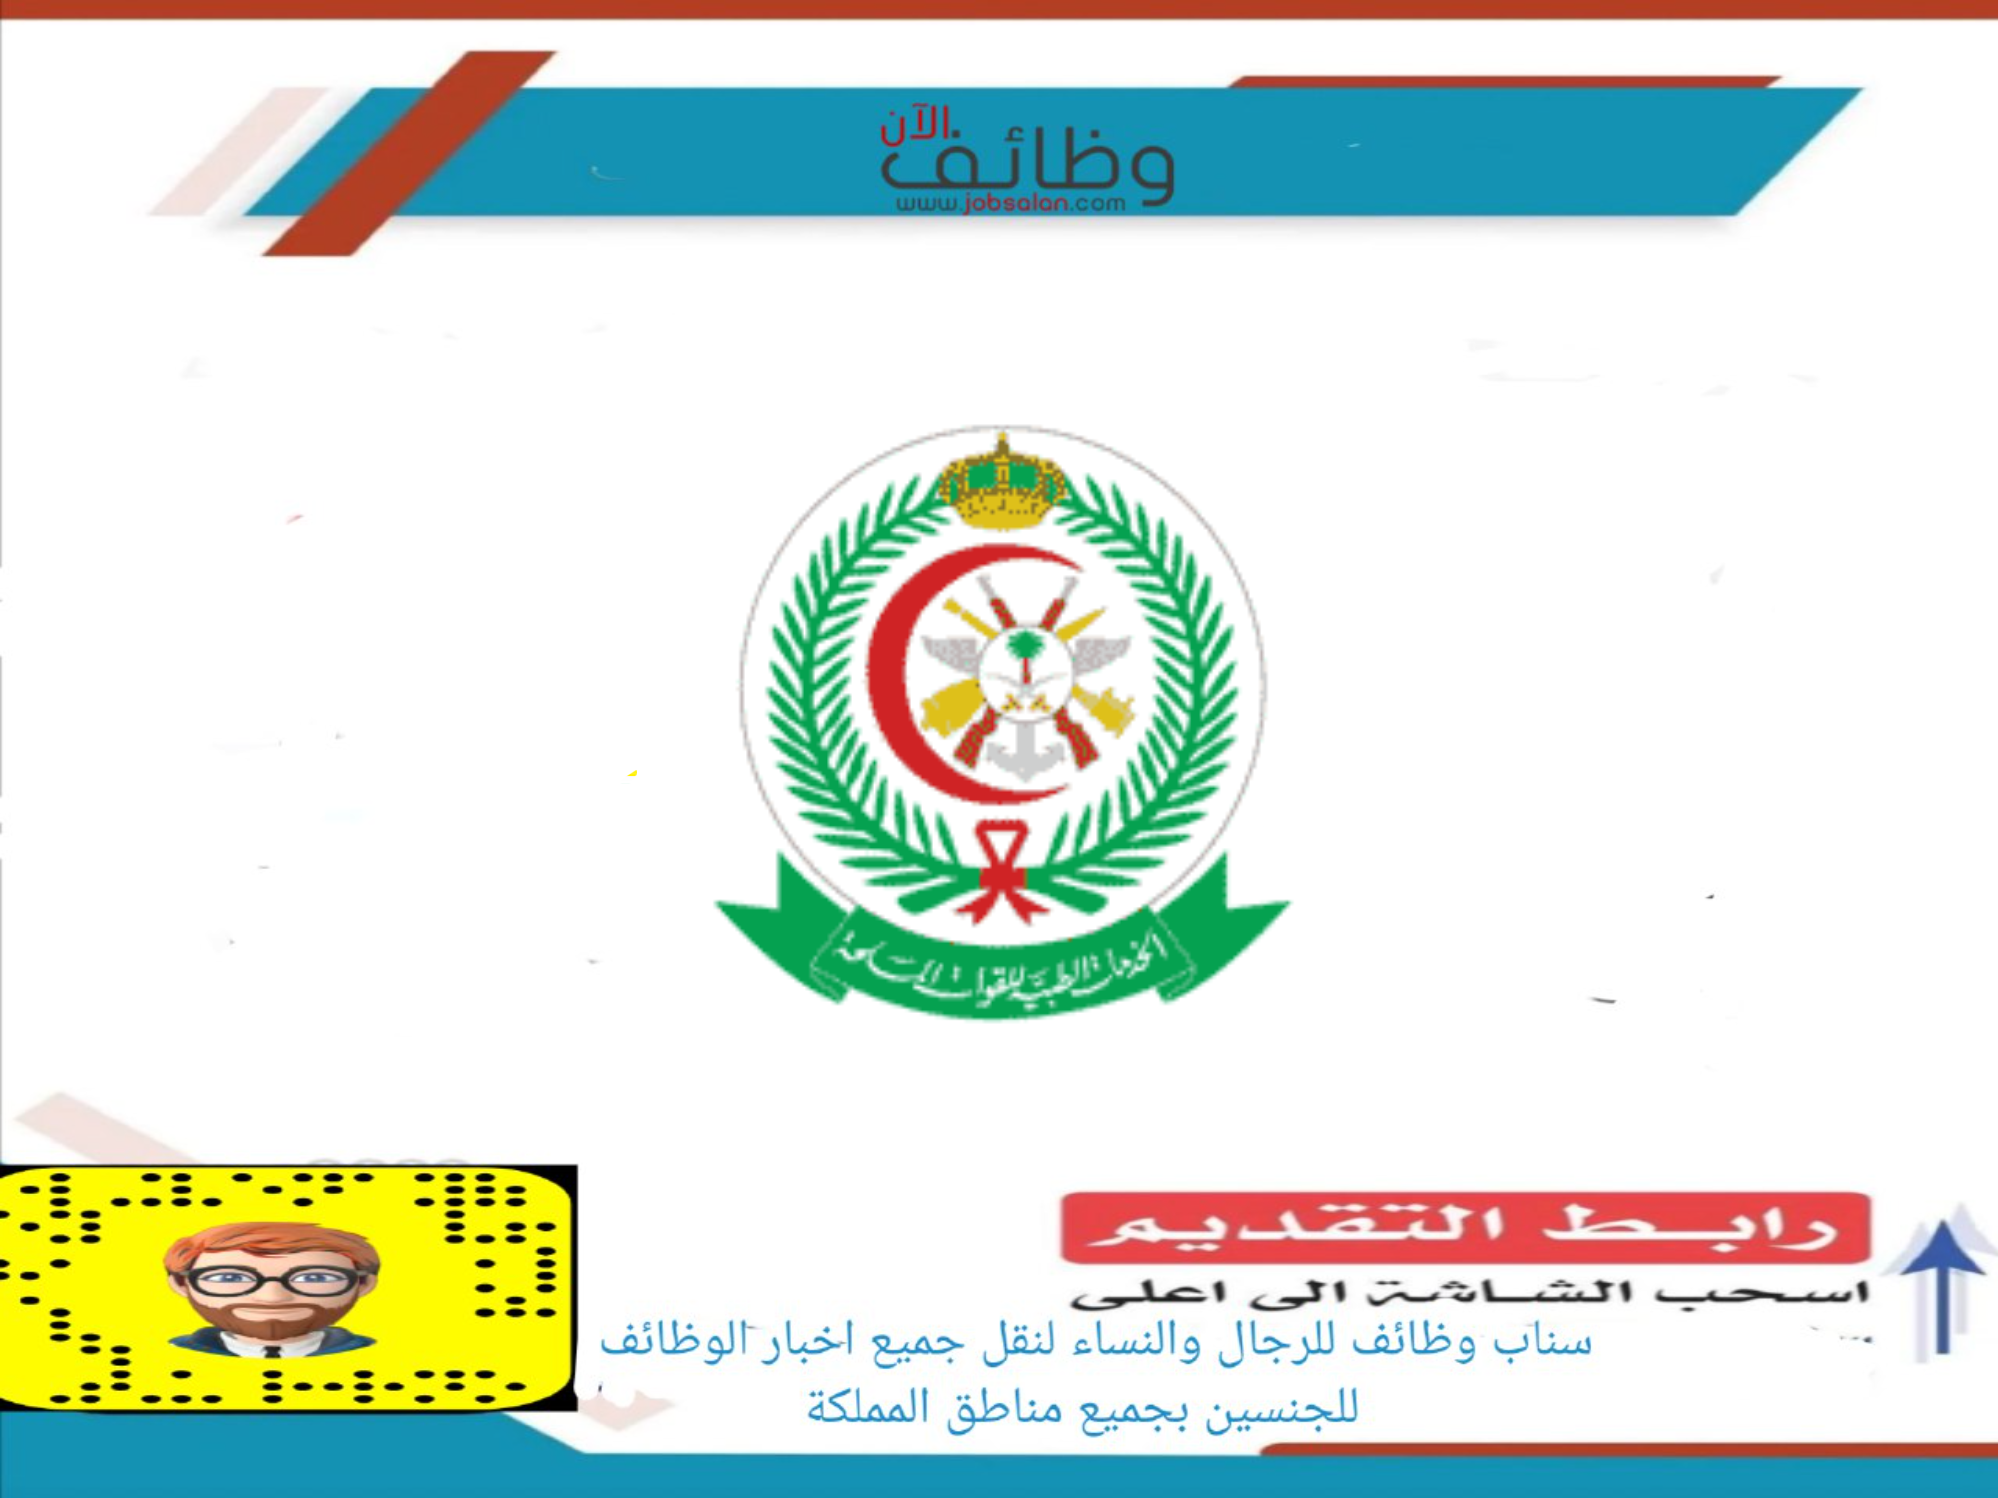 الخدمات الطبية بوزارة الدفاع - سلم رواتب التجنيد الموحد وزارة الدفاع السعودية